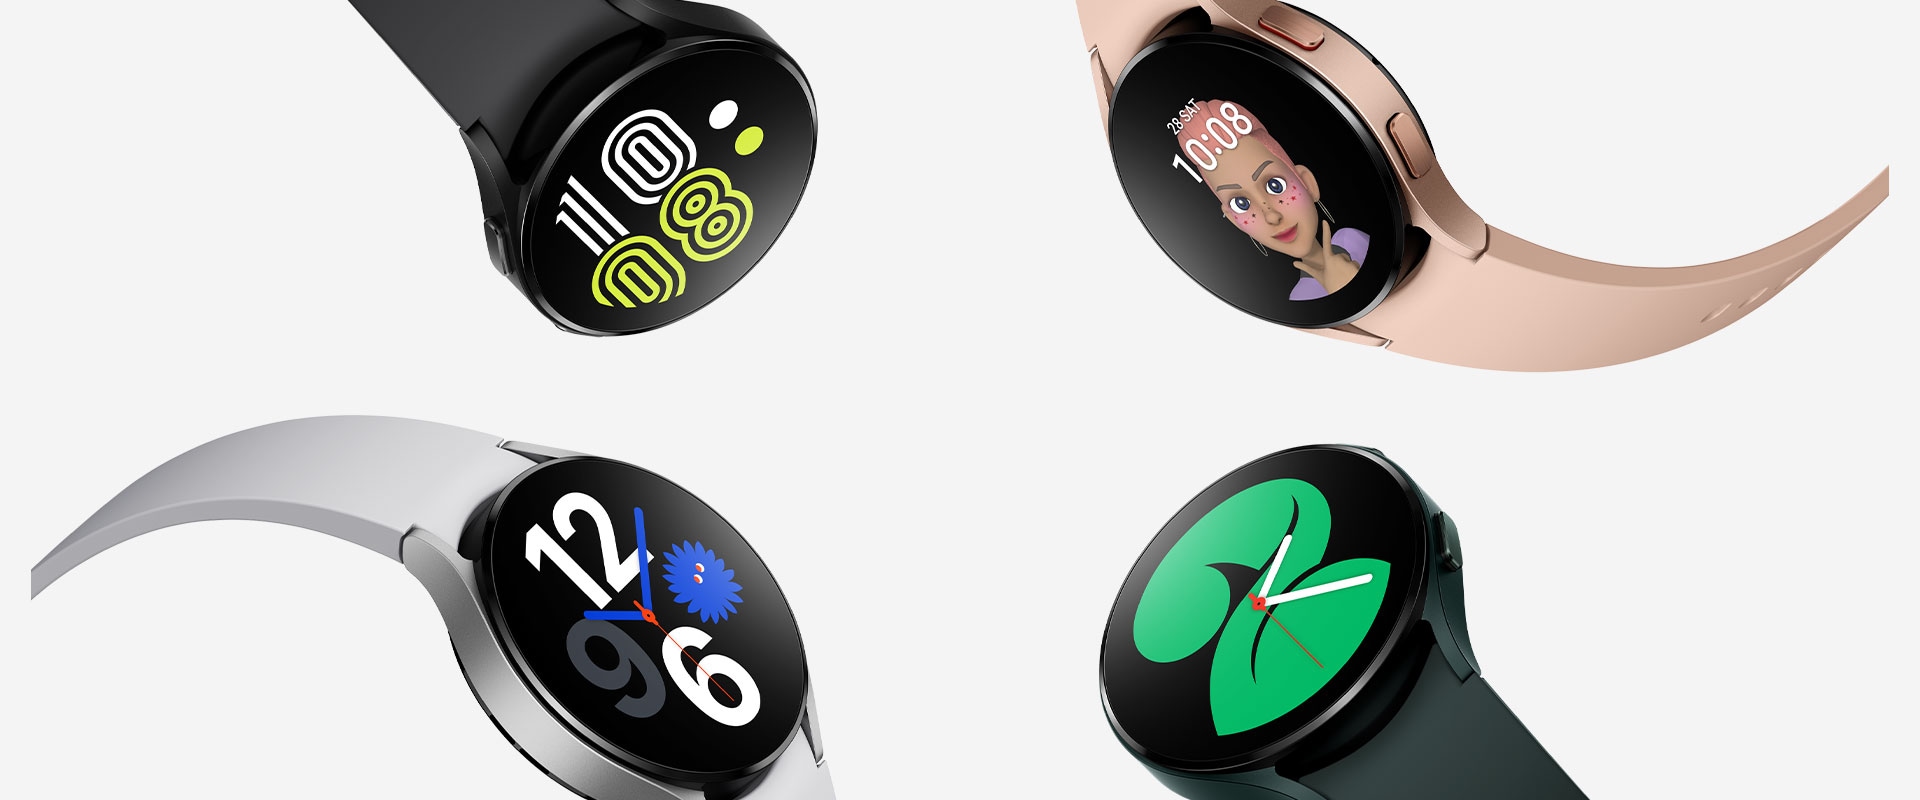 أربع ساعات Galaxy Watch4 مجتمعة معًا، وتعرض كل ساعة بصورة بارزة نمط واجهة ساعة مختلفًا عن الأخرى لعرض الوقت. وتُعرض كل ساعة بلون مختلف يتراوح بين الأسود والذهبي الزهري والأخضر والفضي.